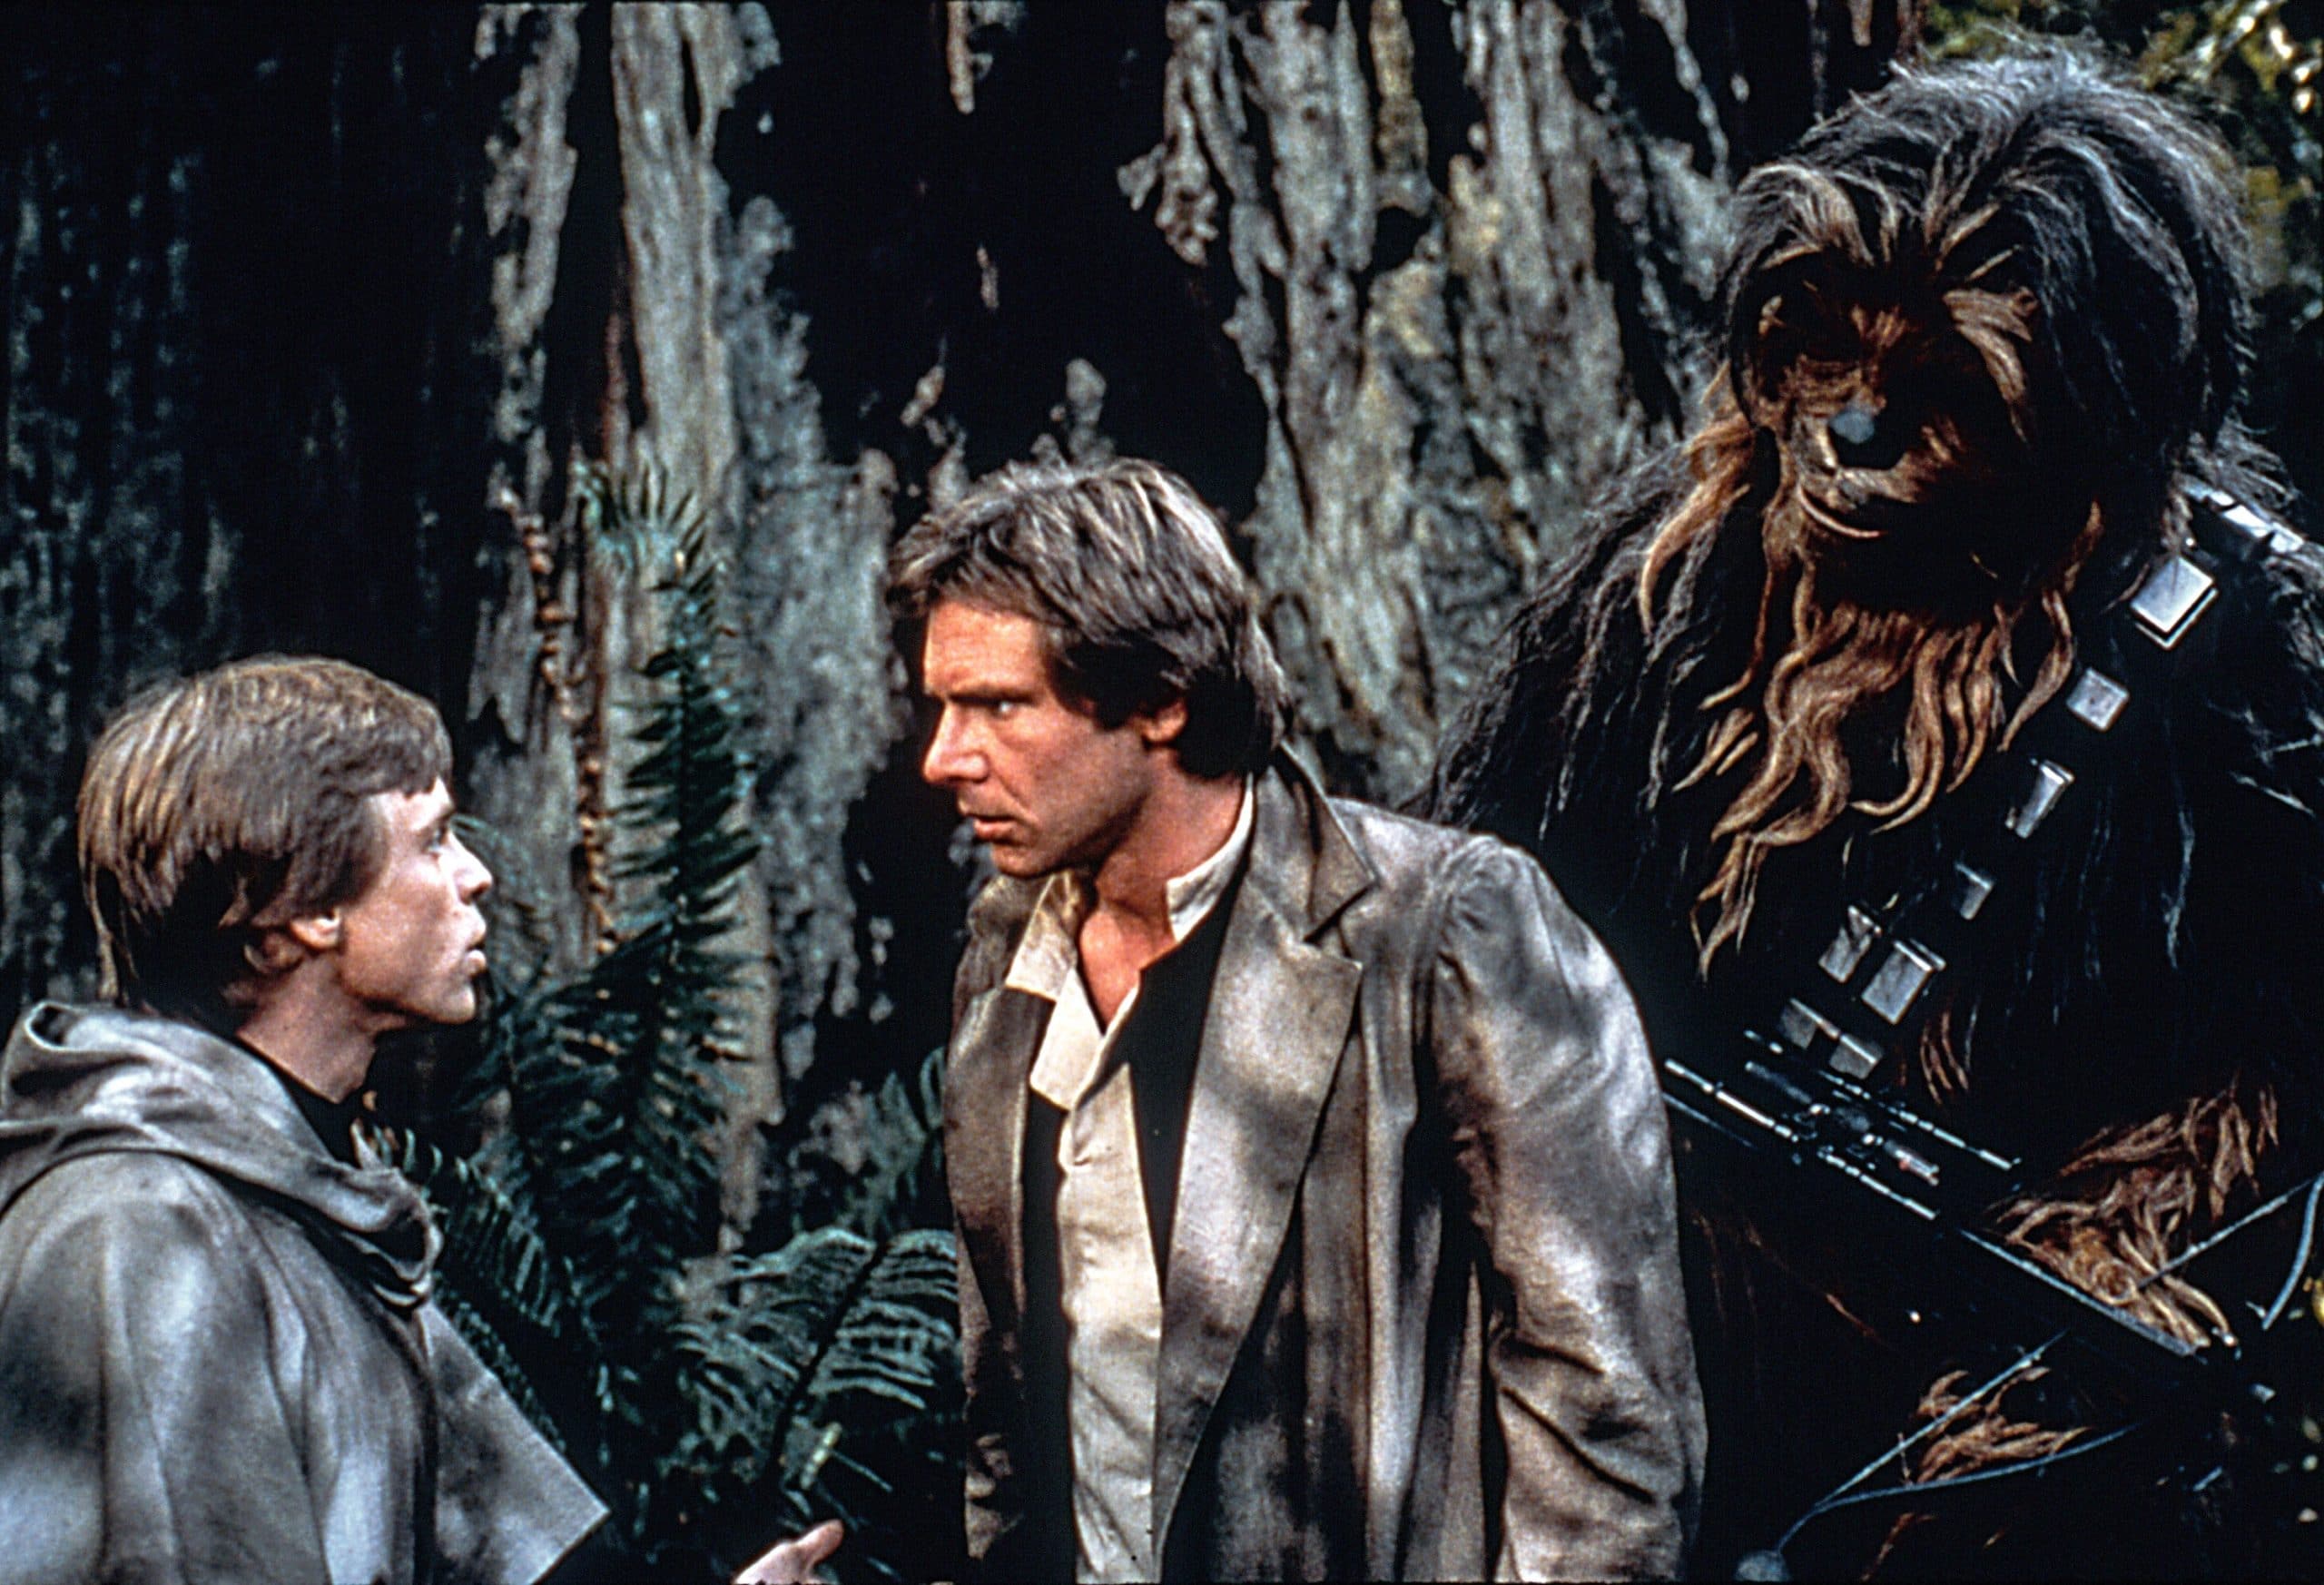 Mark Hamill as Luke Skywalker, Harrison Ford as Han Solo, Peter Mayhew as Chewbacca